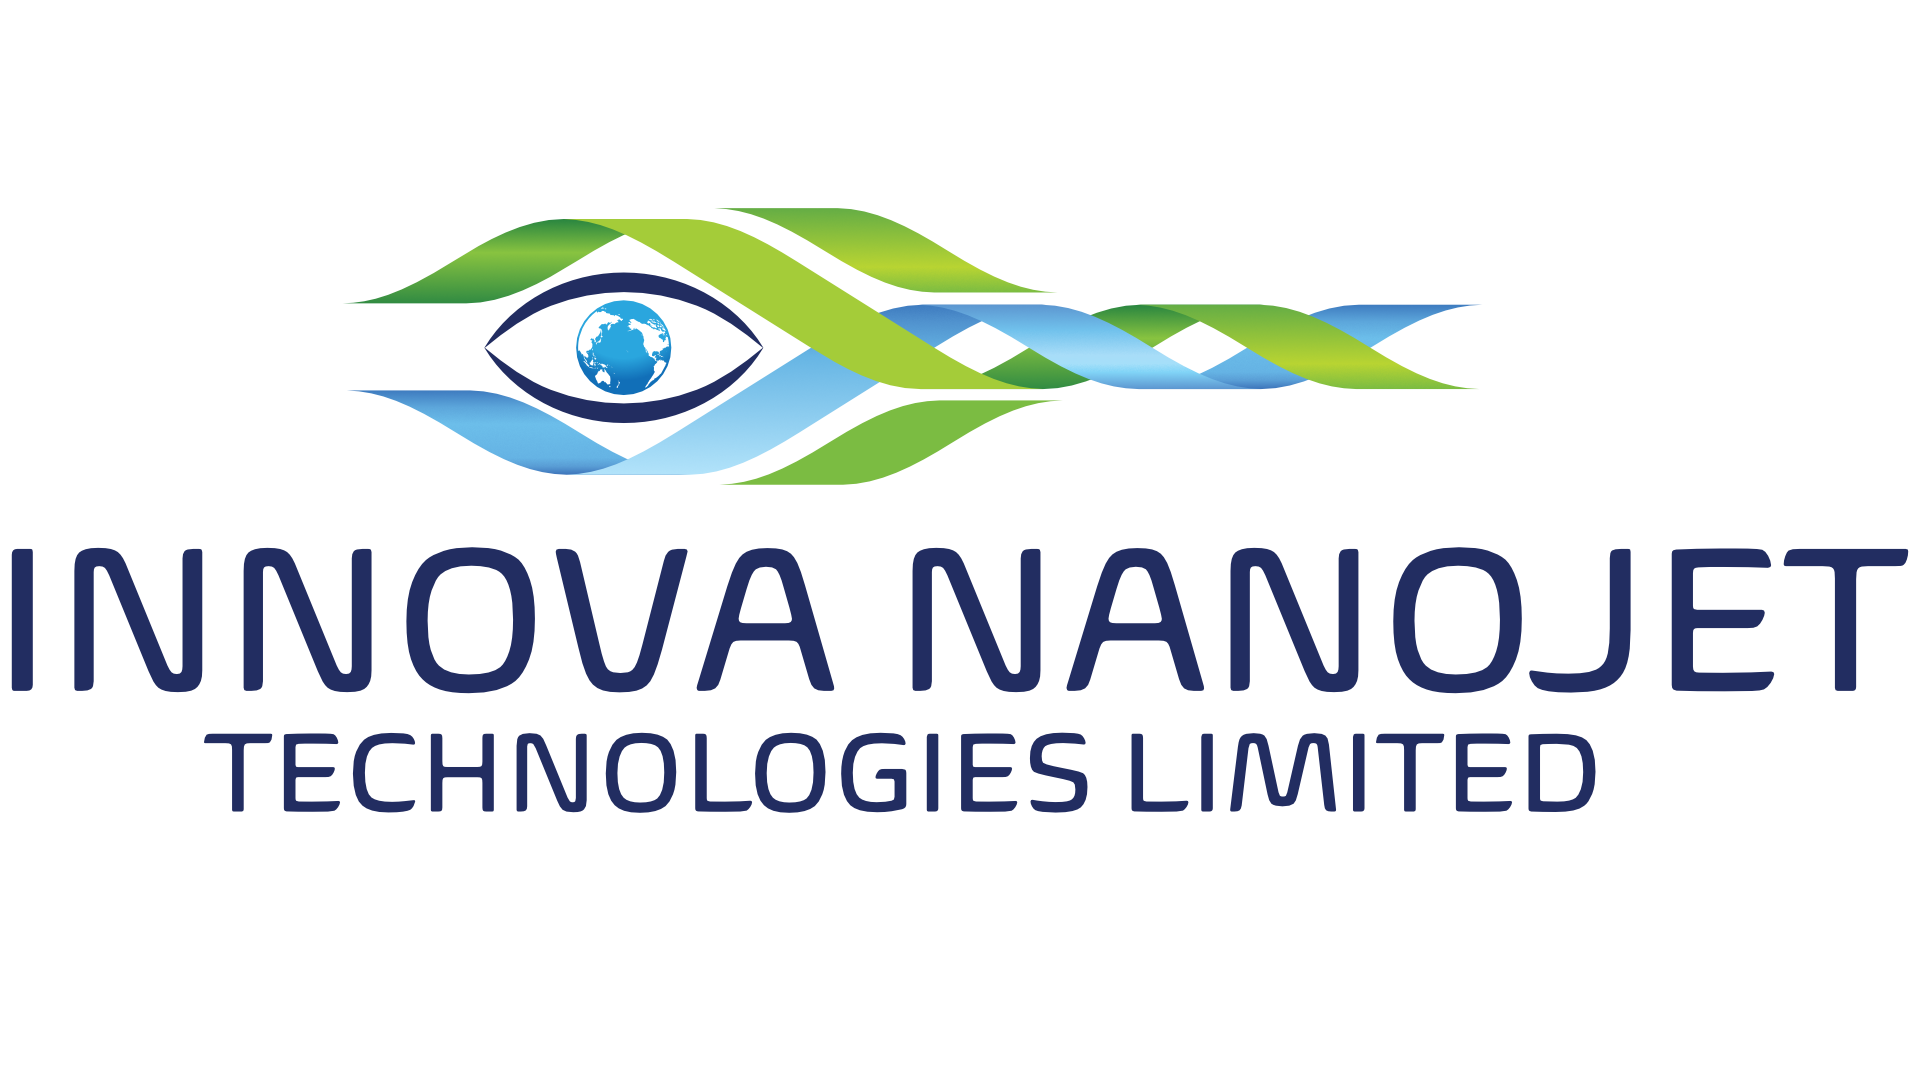 Innova Nanojet Technology